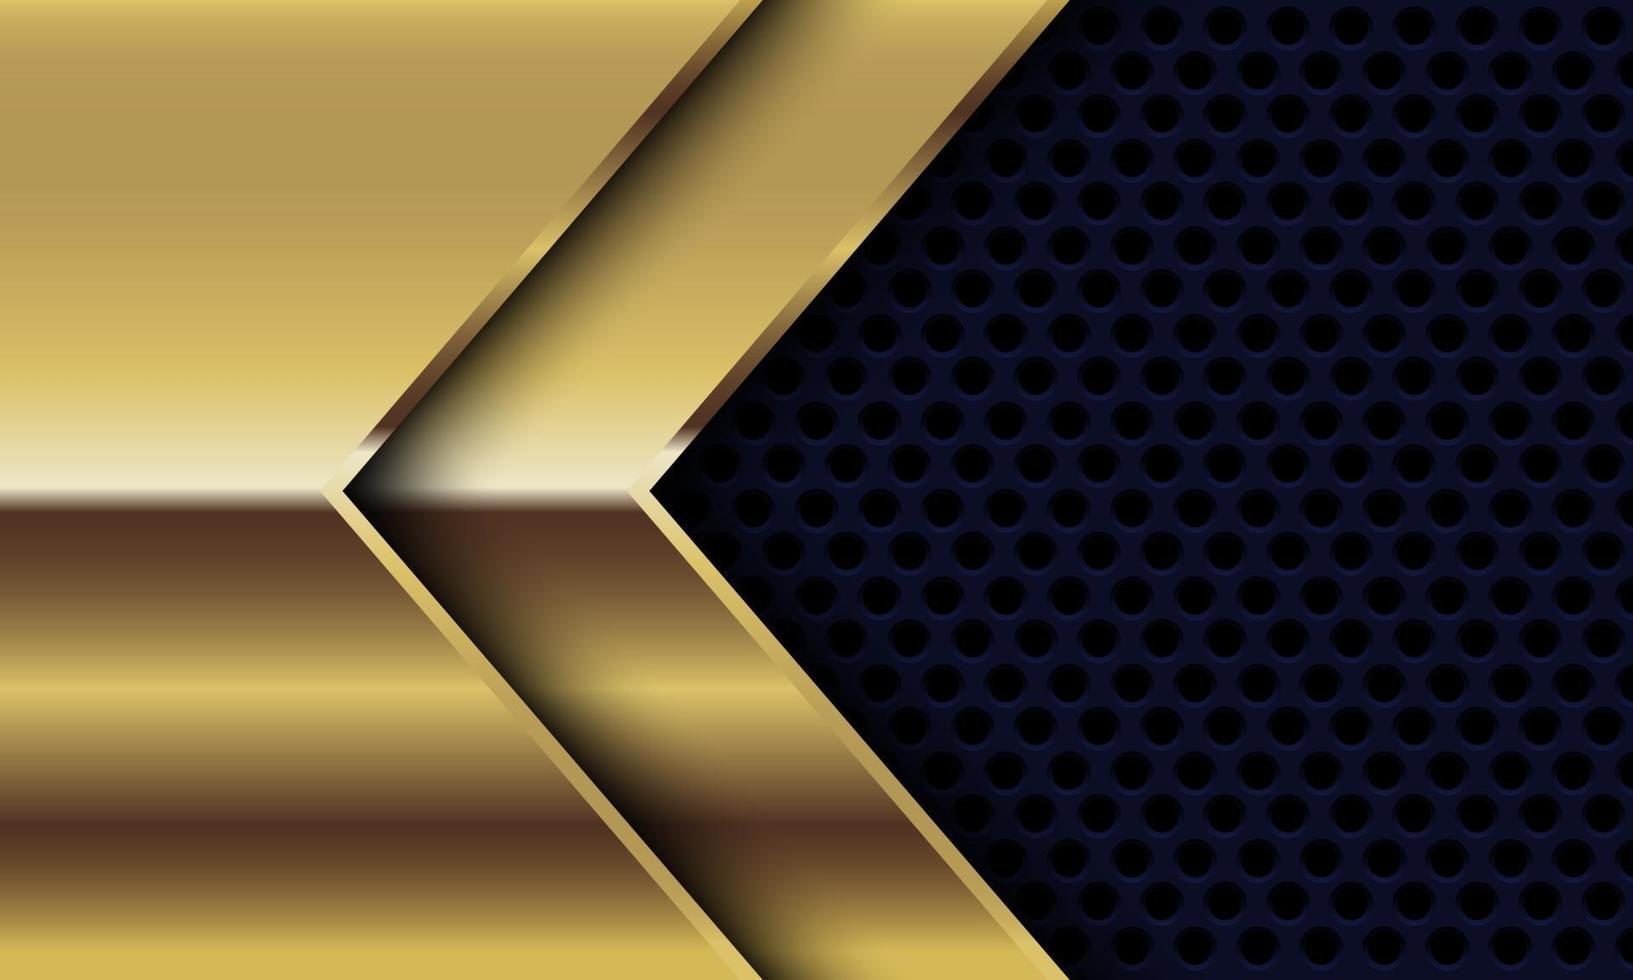 Dirección de flecha brillante de oro abstracto en círculo negro diseño de malla ilustración de vector de fondo futurista de lujo moderno.